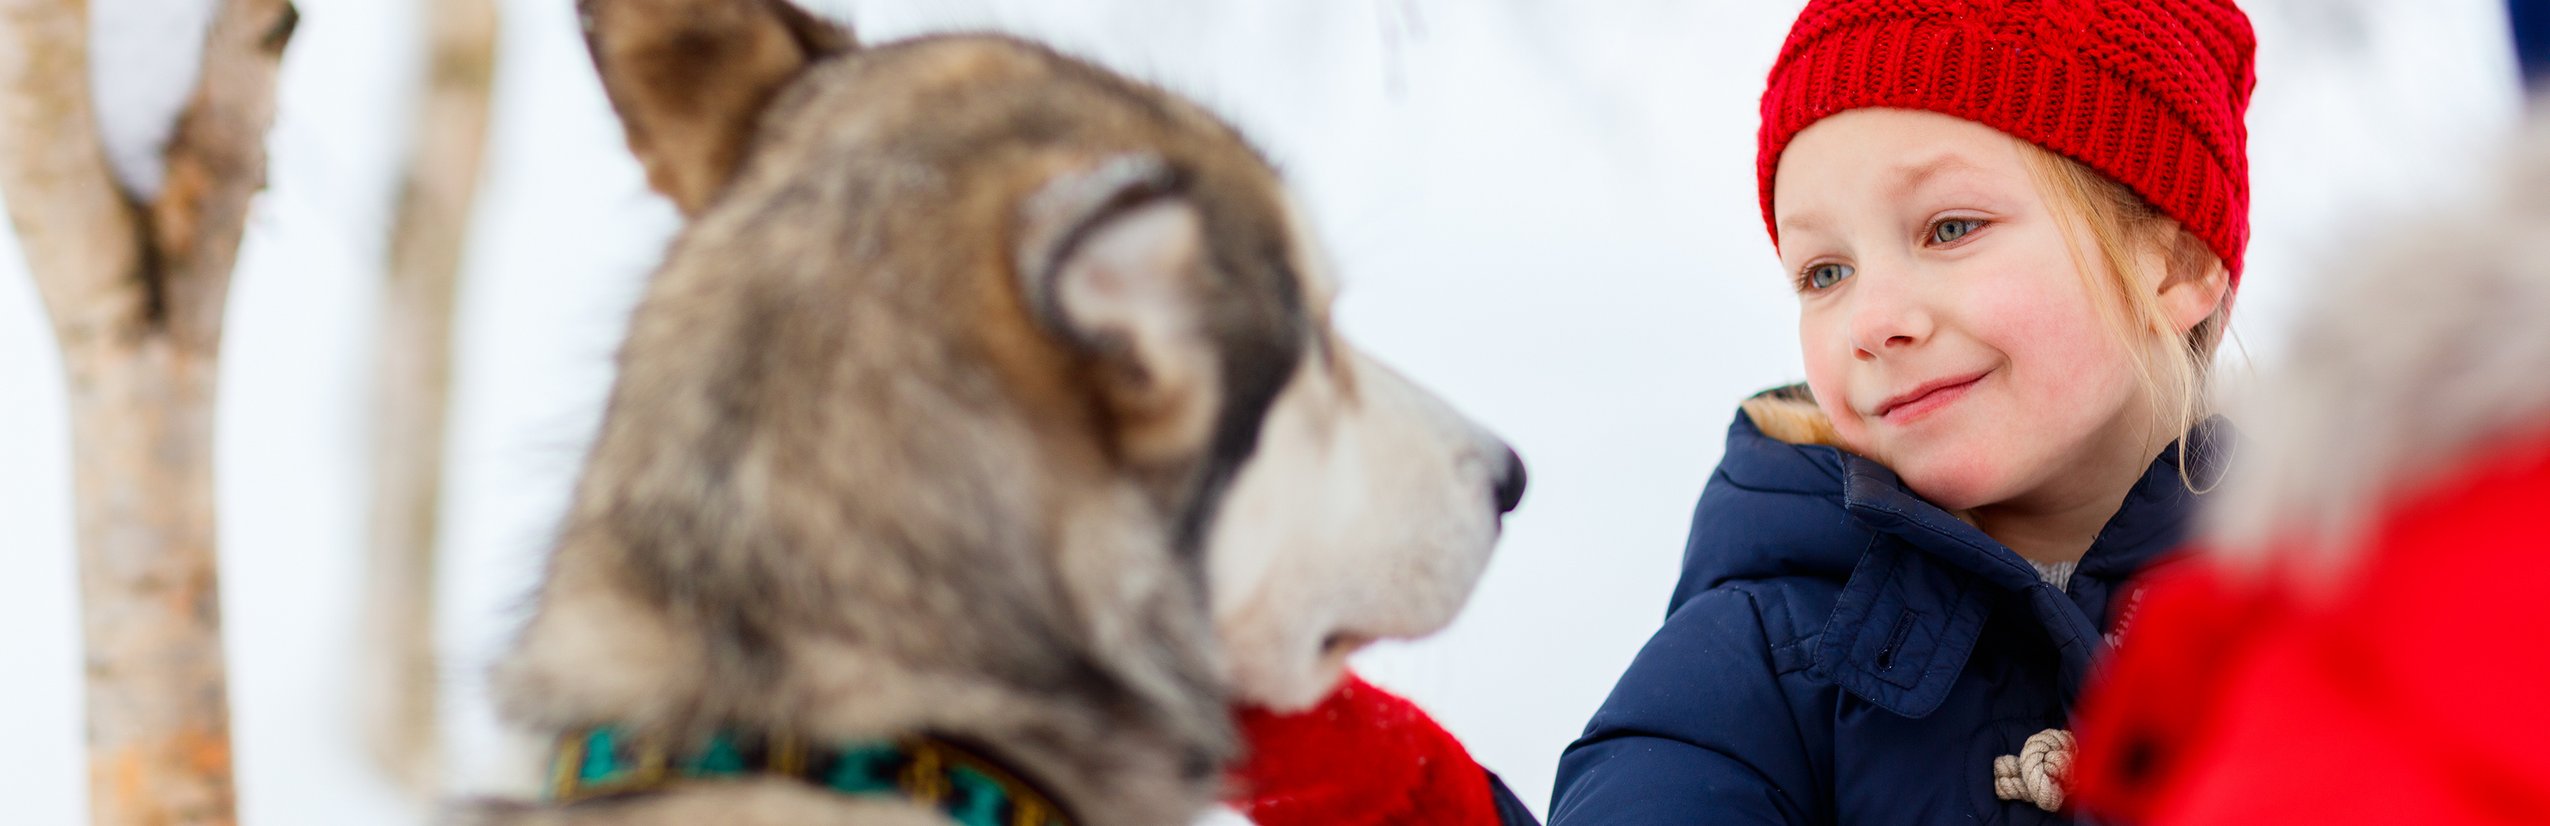 Estland for family Winter - Mädchen mit Schlittenhund